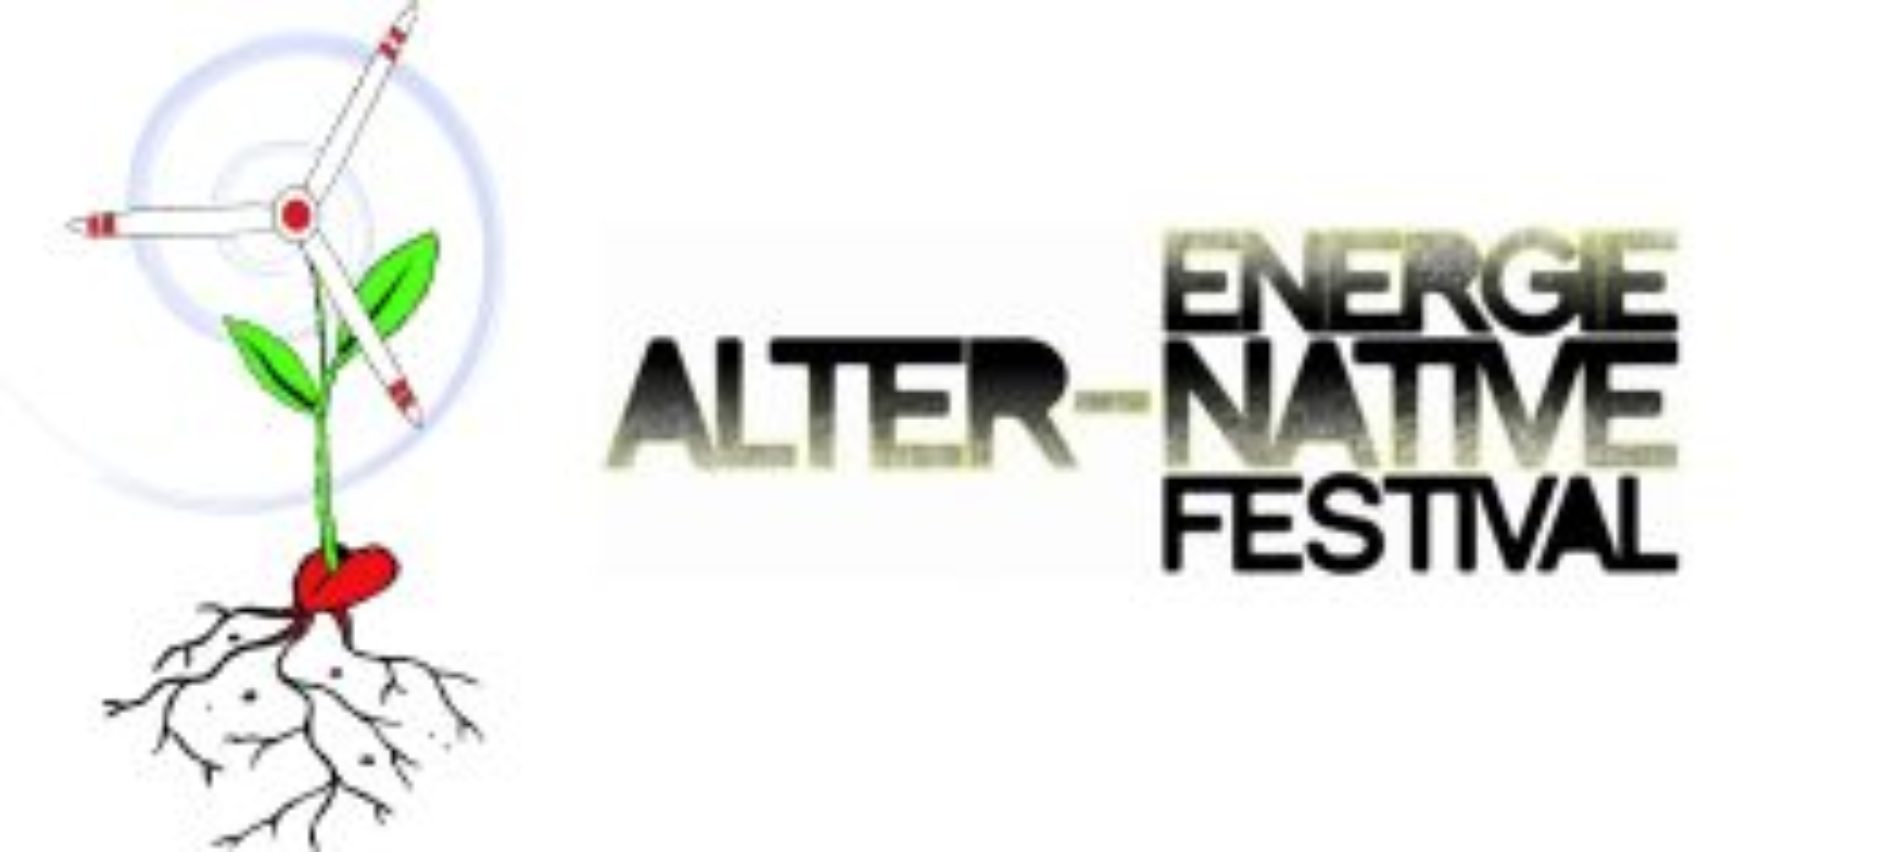 Il 14 e 15 Novembre il Festival energie alter-native 2015 in tour a Licata e Enna per promuovere le energie rinnovabili